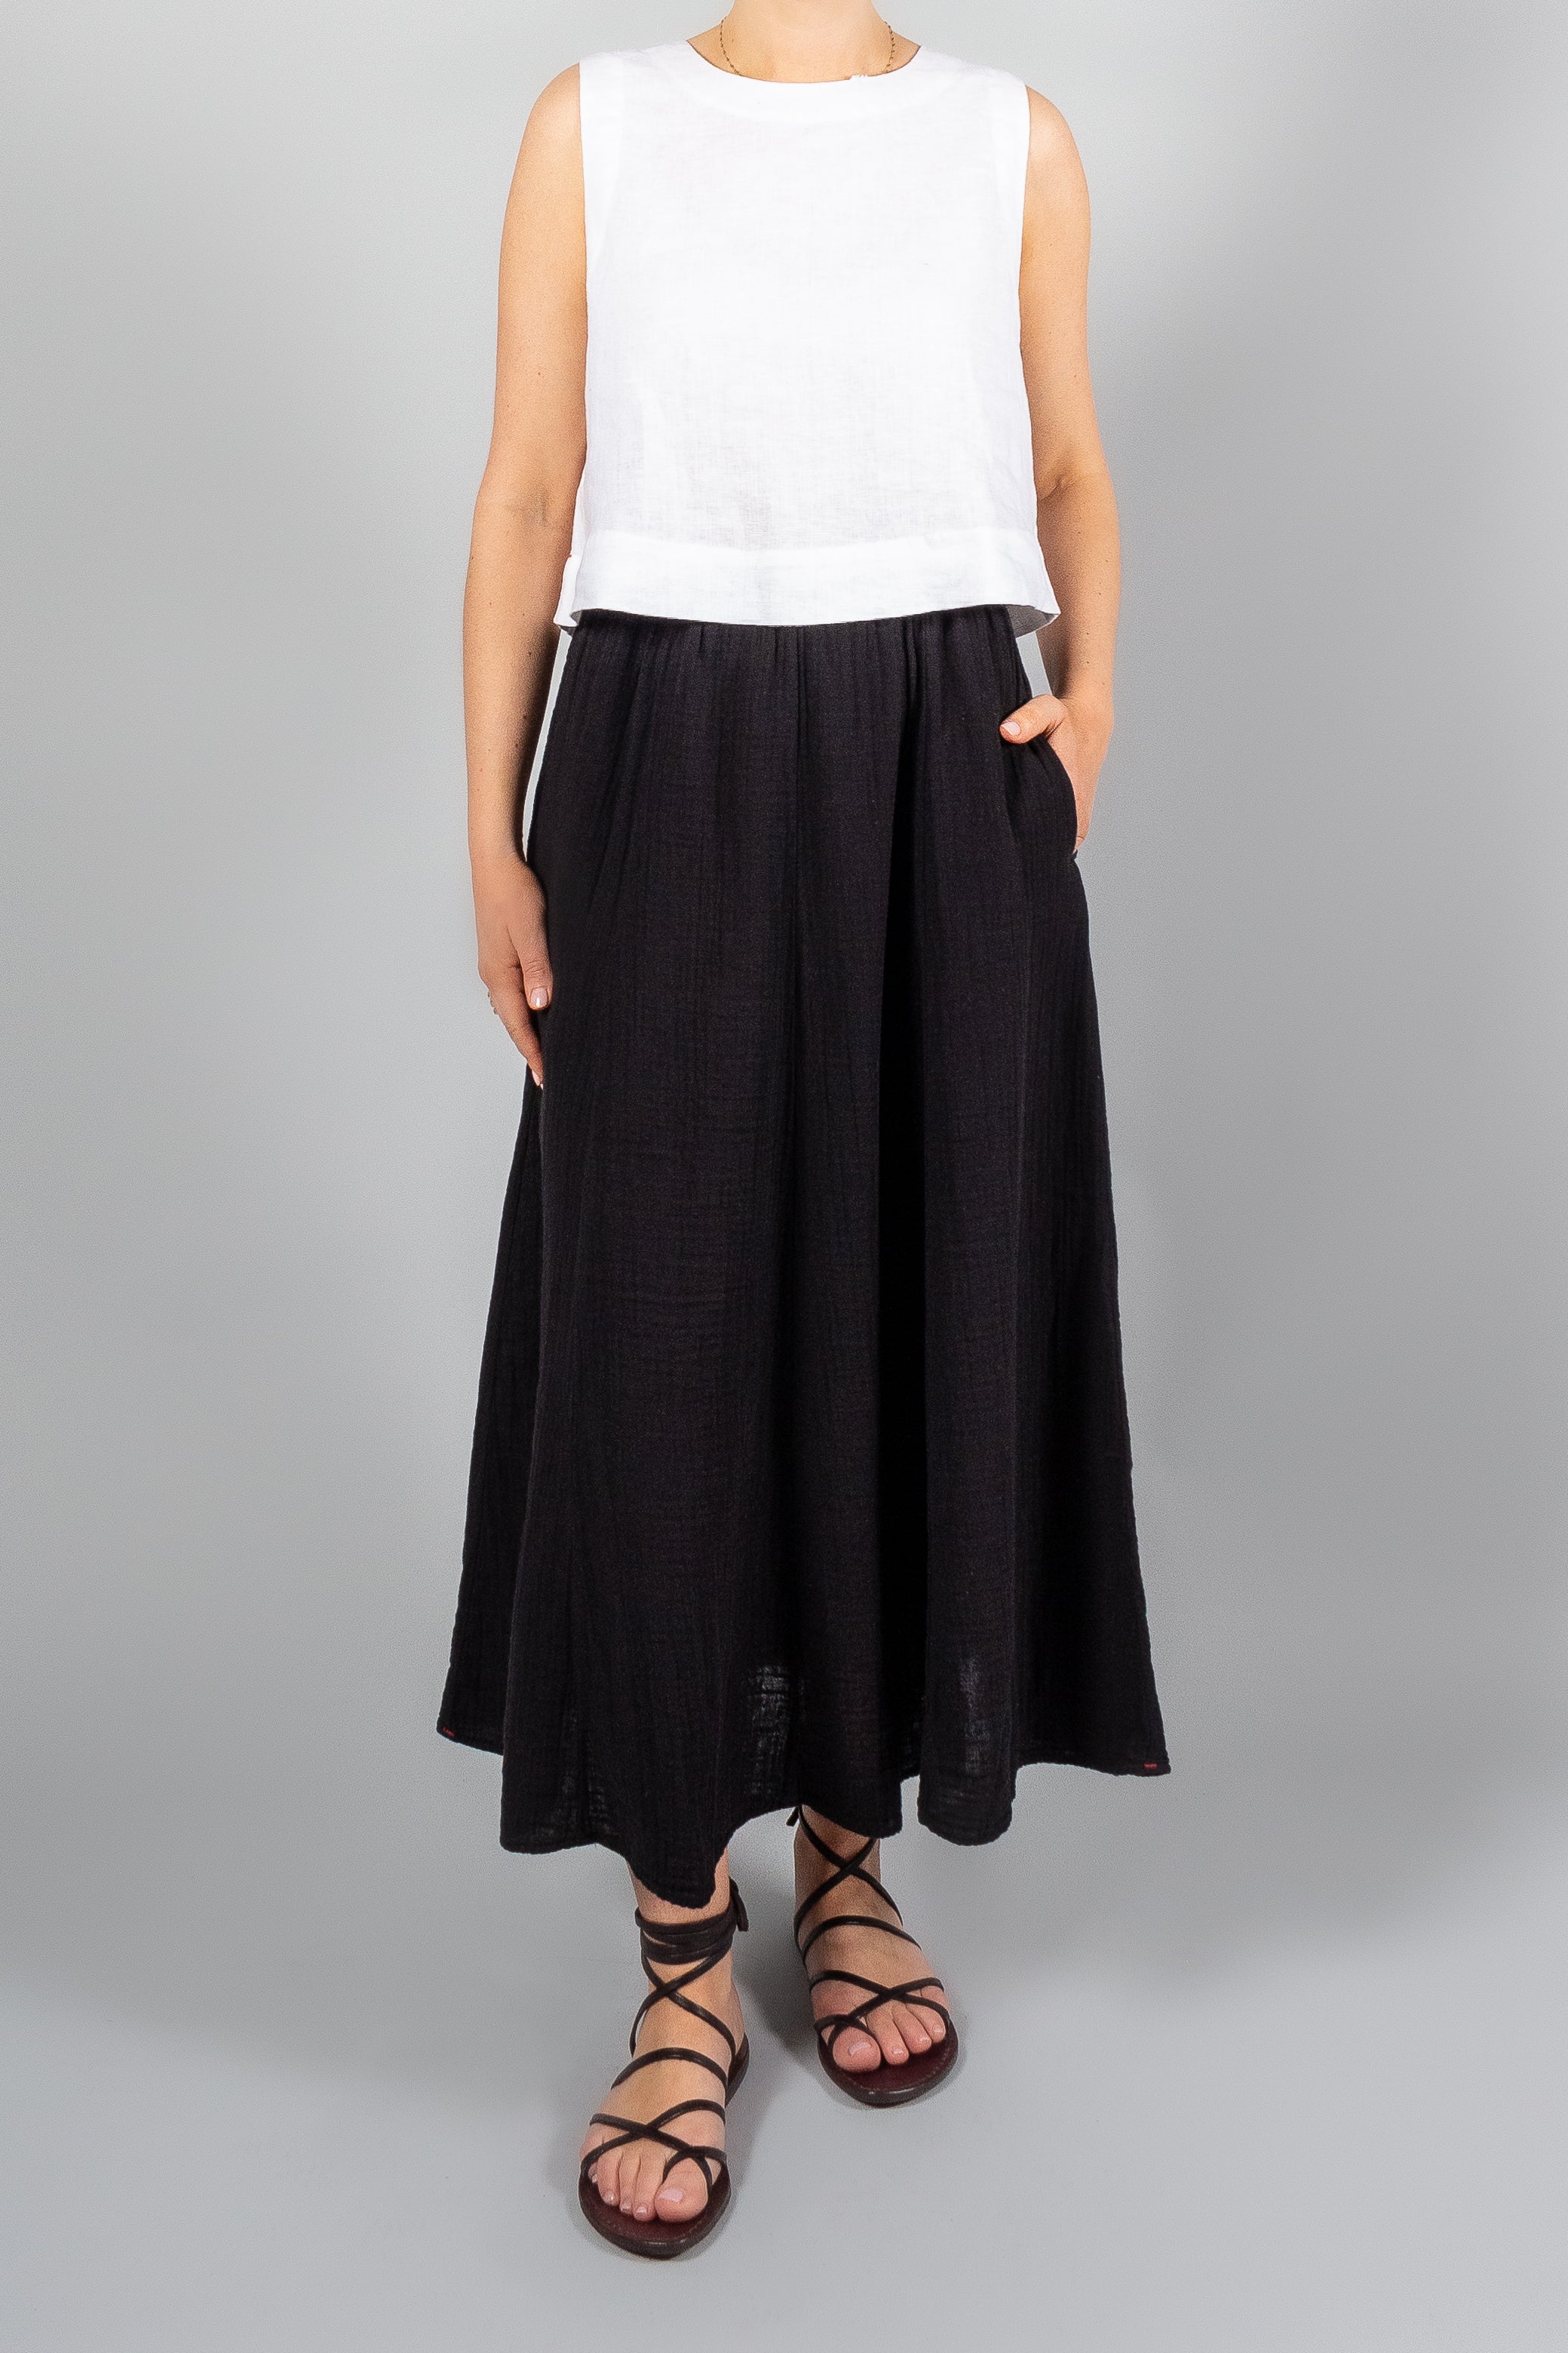 Xirena Deon Skirt-Skirts-Misch-Boutique-Vancouver-Canada-misch.ca